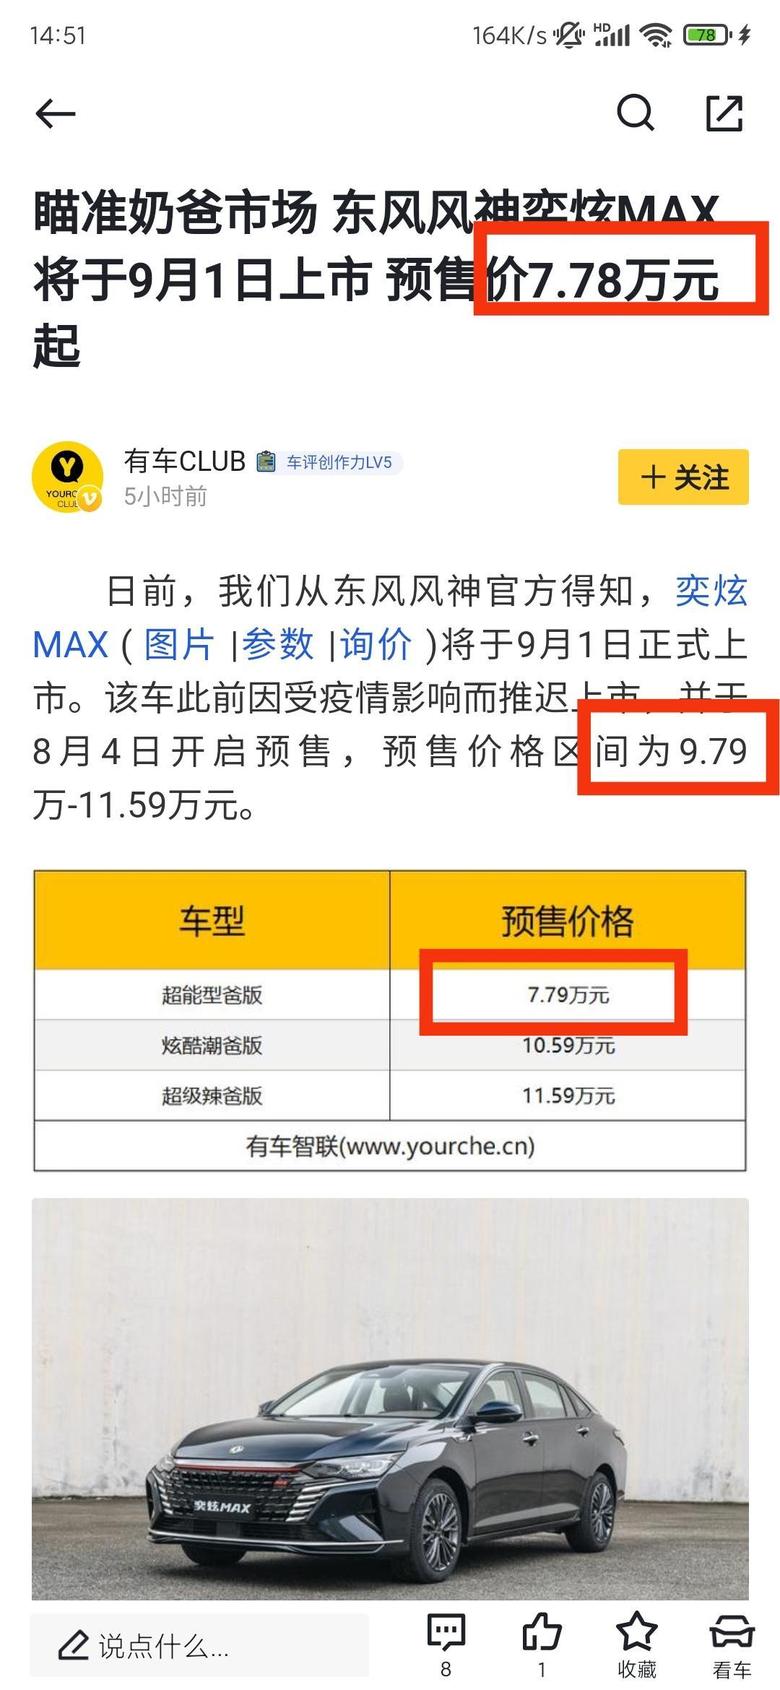 奕炫max 究竟是9.79万起步还是7.78万或者7.79万这都是写错了吗？太不严谨了懂车车。